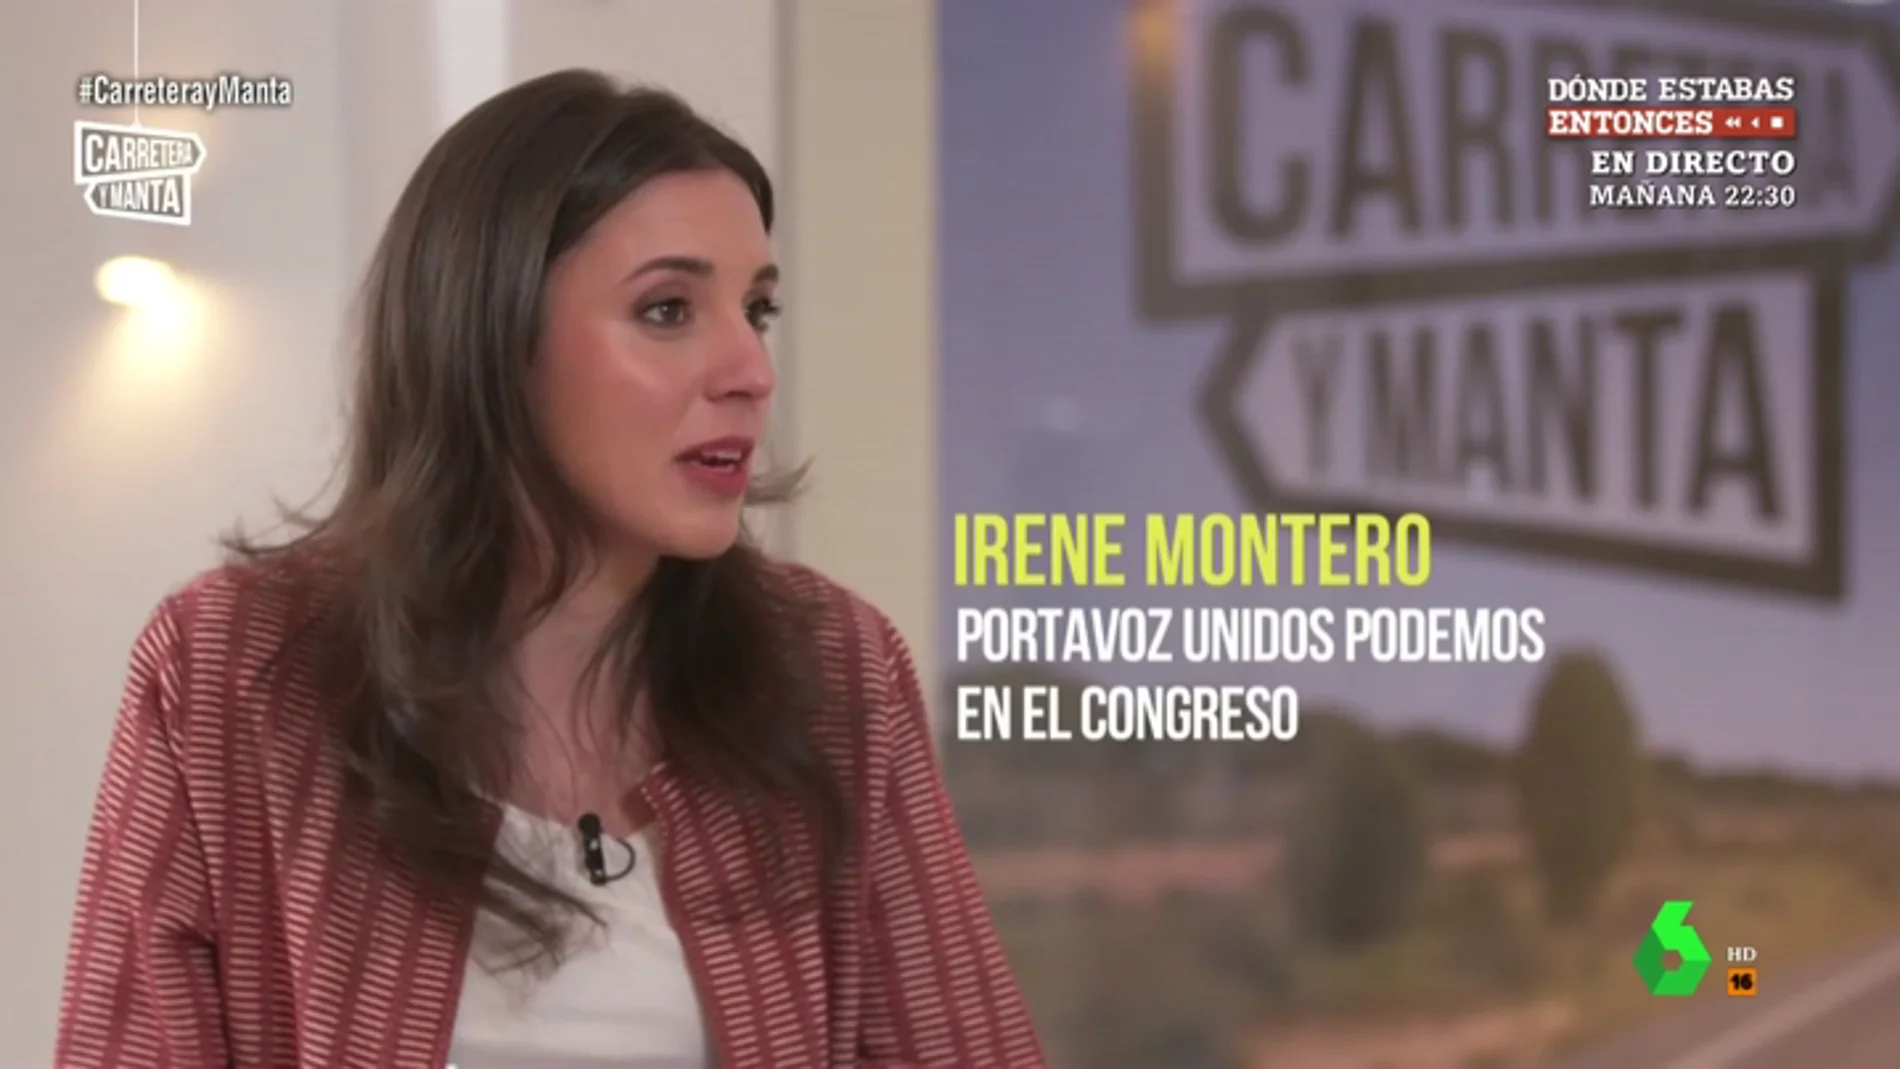 Irene Montero: "Tener dos hijos prematuros hace que las cosas sean más difíciles, pero también te hace creer en la vida"